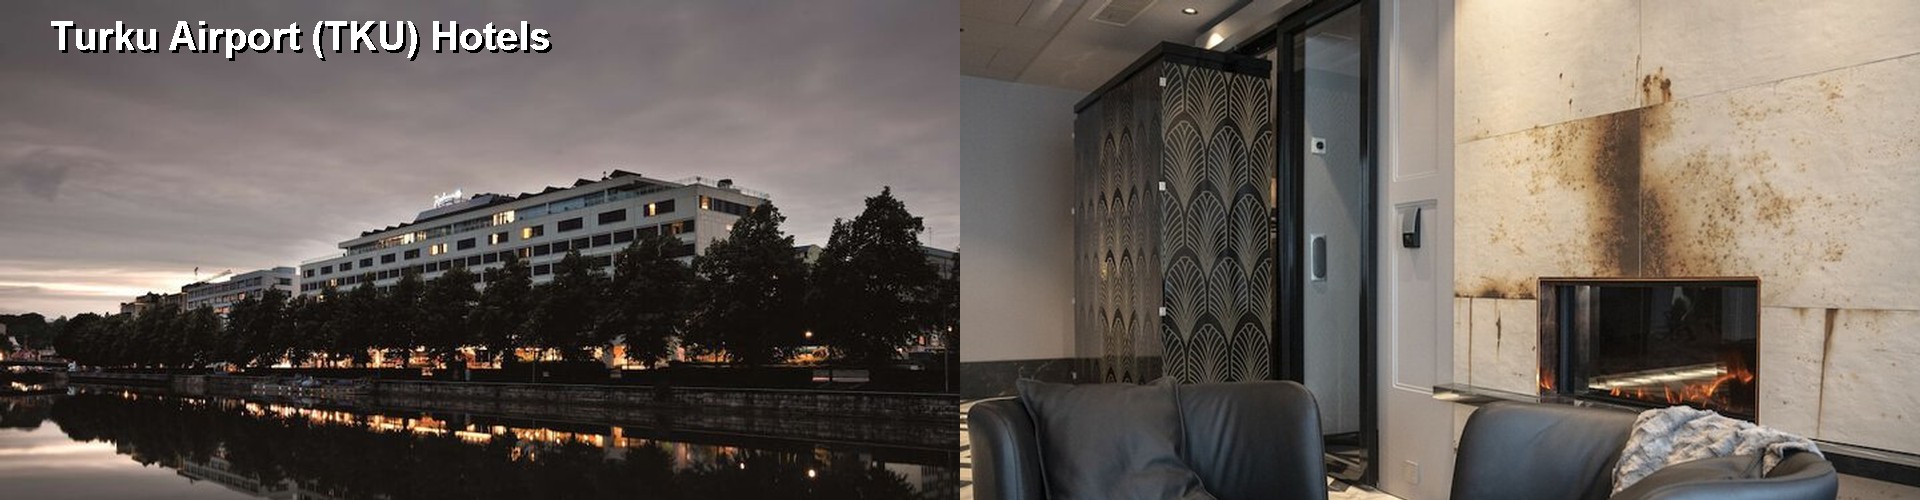 5 Best Hotels near Turku Airport (TKU)